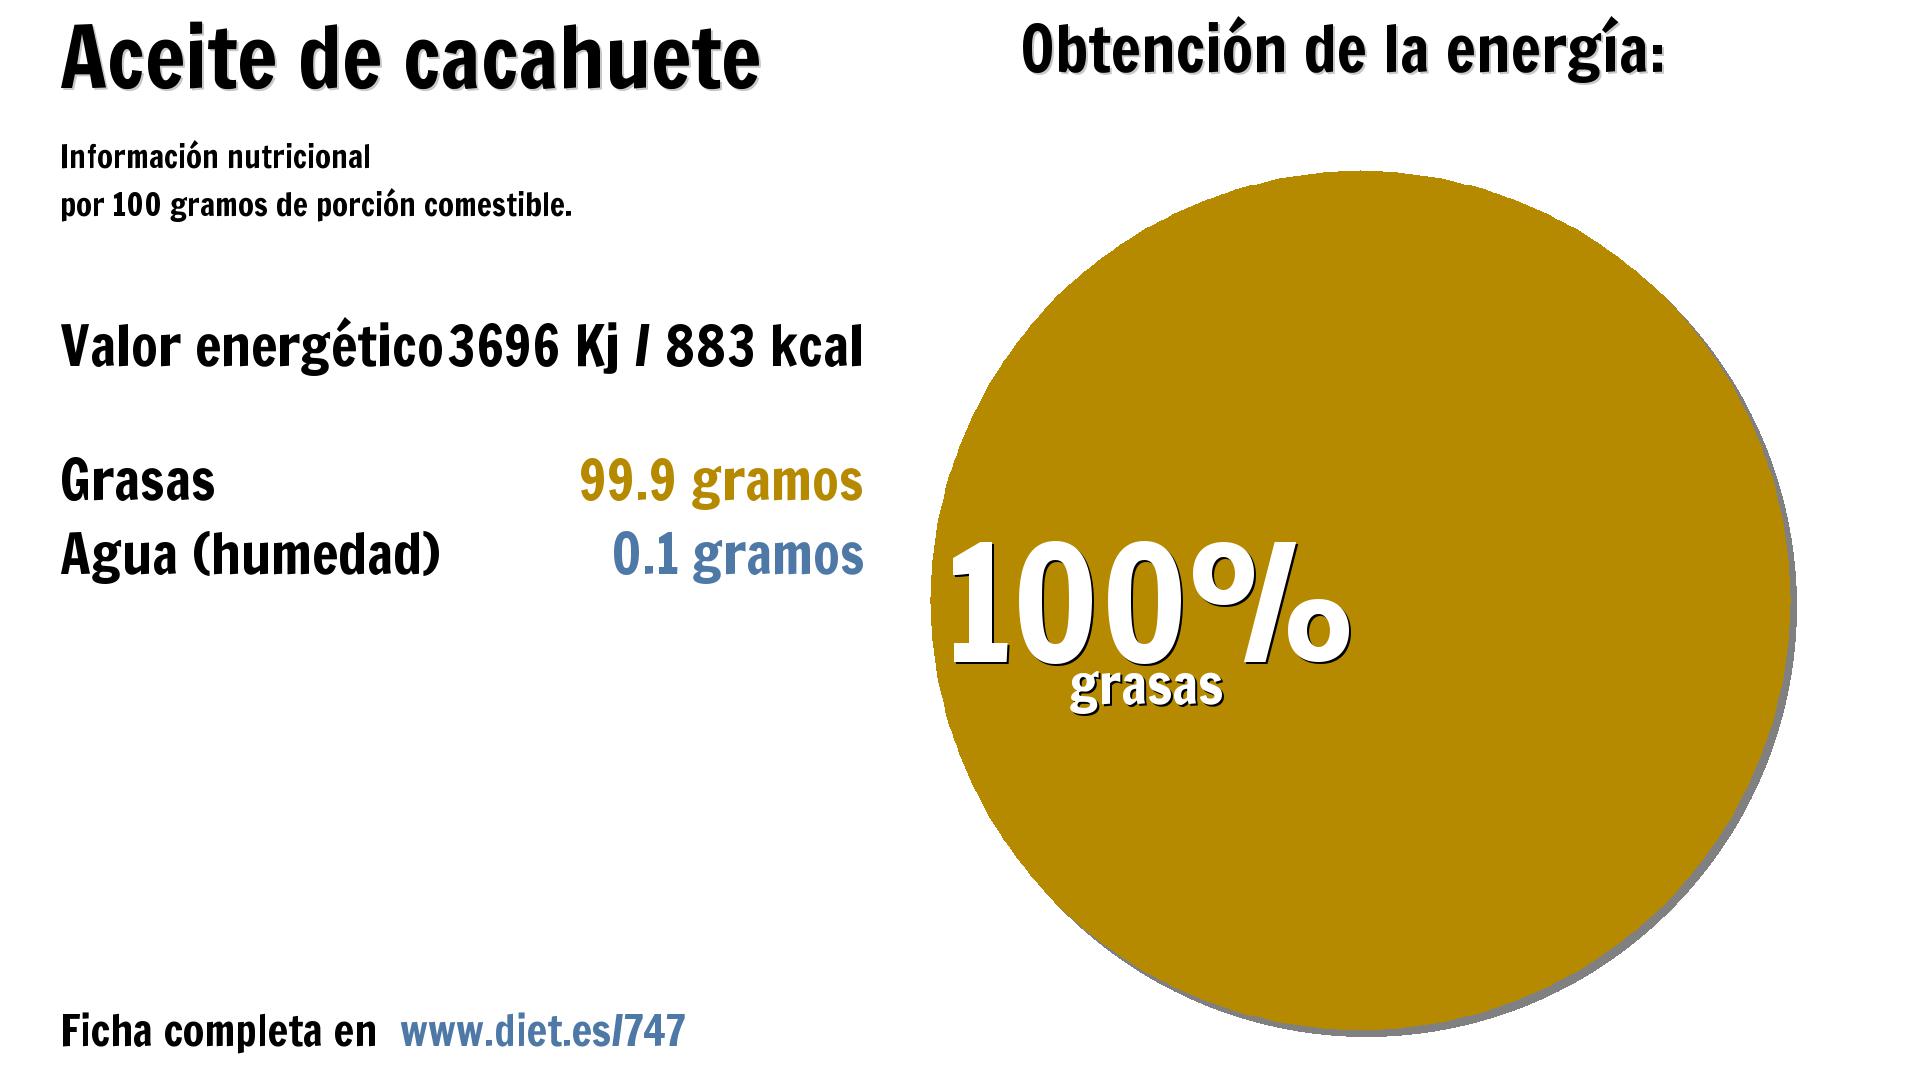 Aceite de cacahuete: energía 3696 Kj y grasas 100 g.